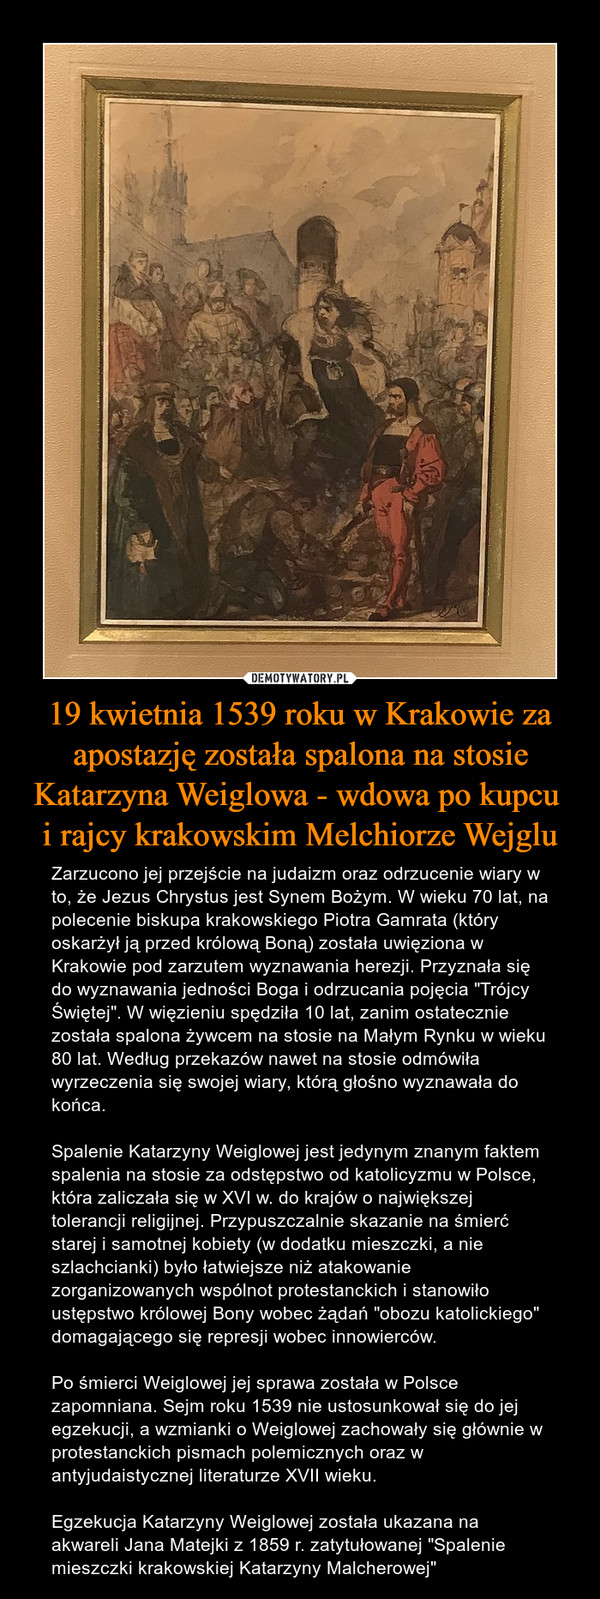 19 kwietnia 1539 roku w Krakowie za apostazję została spalona na stosie Katarzyna Weiglowa - wdowa po kupcu i rajcy krakowskim Melchiorze Wejglu – Zarzucono jej przejście na judaizm oraz odrzucenie wiary w to, że Jezus Chrystus jest Synem Bożym. W wieku 70 lat, na polecenie biskupa krakowskiego Piotra Gamrata (który oskarżył ją przed królową Boną) została uwięziona w Krakowie pod zarzutem wyznawania herezji. Przyznała się do wyznawania jedności Boga i odrzucania pojęcia "Trójcy Świętej". W więzieniu spędziła 10 lat, zanim ostatecznie została spalona żywcem na stosie na Małym Rynku w wieku 80 lat. Według przekazów nawet na stosie odmówiła wyrzeczenia się swojej wiary, którą głośno wyznawała do końca.Spalenie Katarzyny Weiglowej jest jedynym znanym faktem spalenia na stosie za odstępstwo od katolicyzmu w Polsce, która zaliczała się w XVI w. do krajów o największej tolerancji religijnej. Przypuszczalnie skazanie na śmierć starej i samotnej kobiety (w dodatku mieszczki, a nie szlachcianki) było łatwiejsze niż atakowanie zorganizowanych wspólnot protestanckich i stanowiło ustępstwo królowej Bony wobec żądań "obozu katolickiego" domagającego się represji wobec innowierców. Po śmierci Weiglowej jej sprawa została w Polsce zapomniana. Sejm roku 1539 nie ustosunkował się do jej egzekucji, a wzmianki o Weiglowej zachowały się głównie w protestanckich pismach polemicznych oraz w antyjudaistycznej literaturze XVII wieku.Egzekucja Katarzyny Weiglowej została ukazana na akwareli Jana Matejki z 1859 r. zatytułowanej "Spalenie mieszczki krakowskiej Katarzyny Malcherowej" 